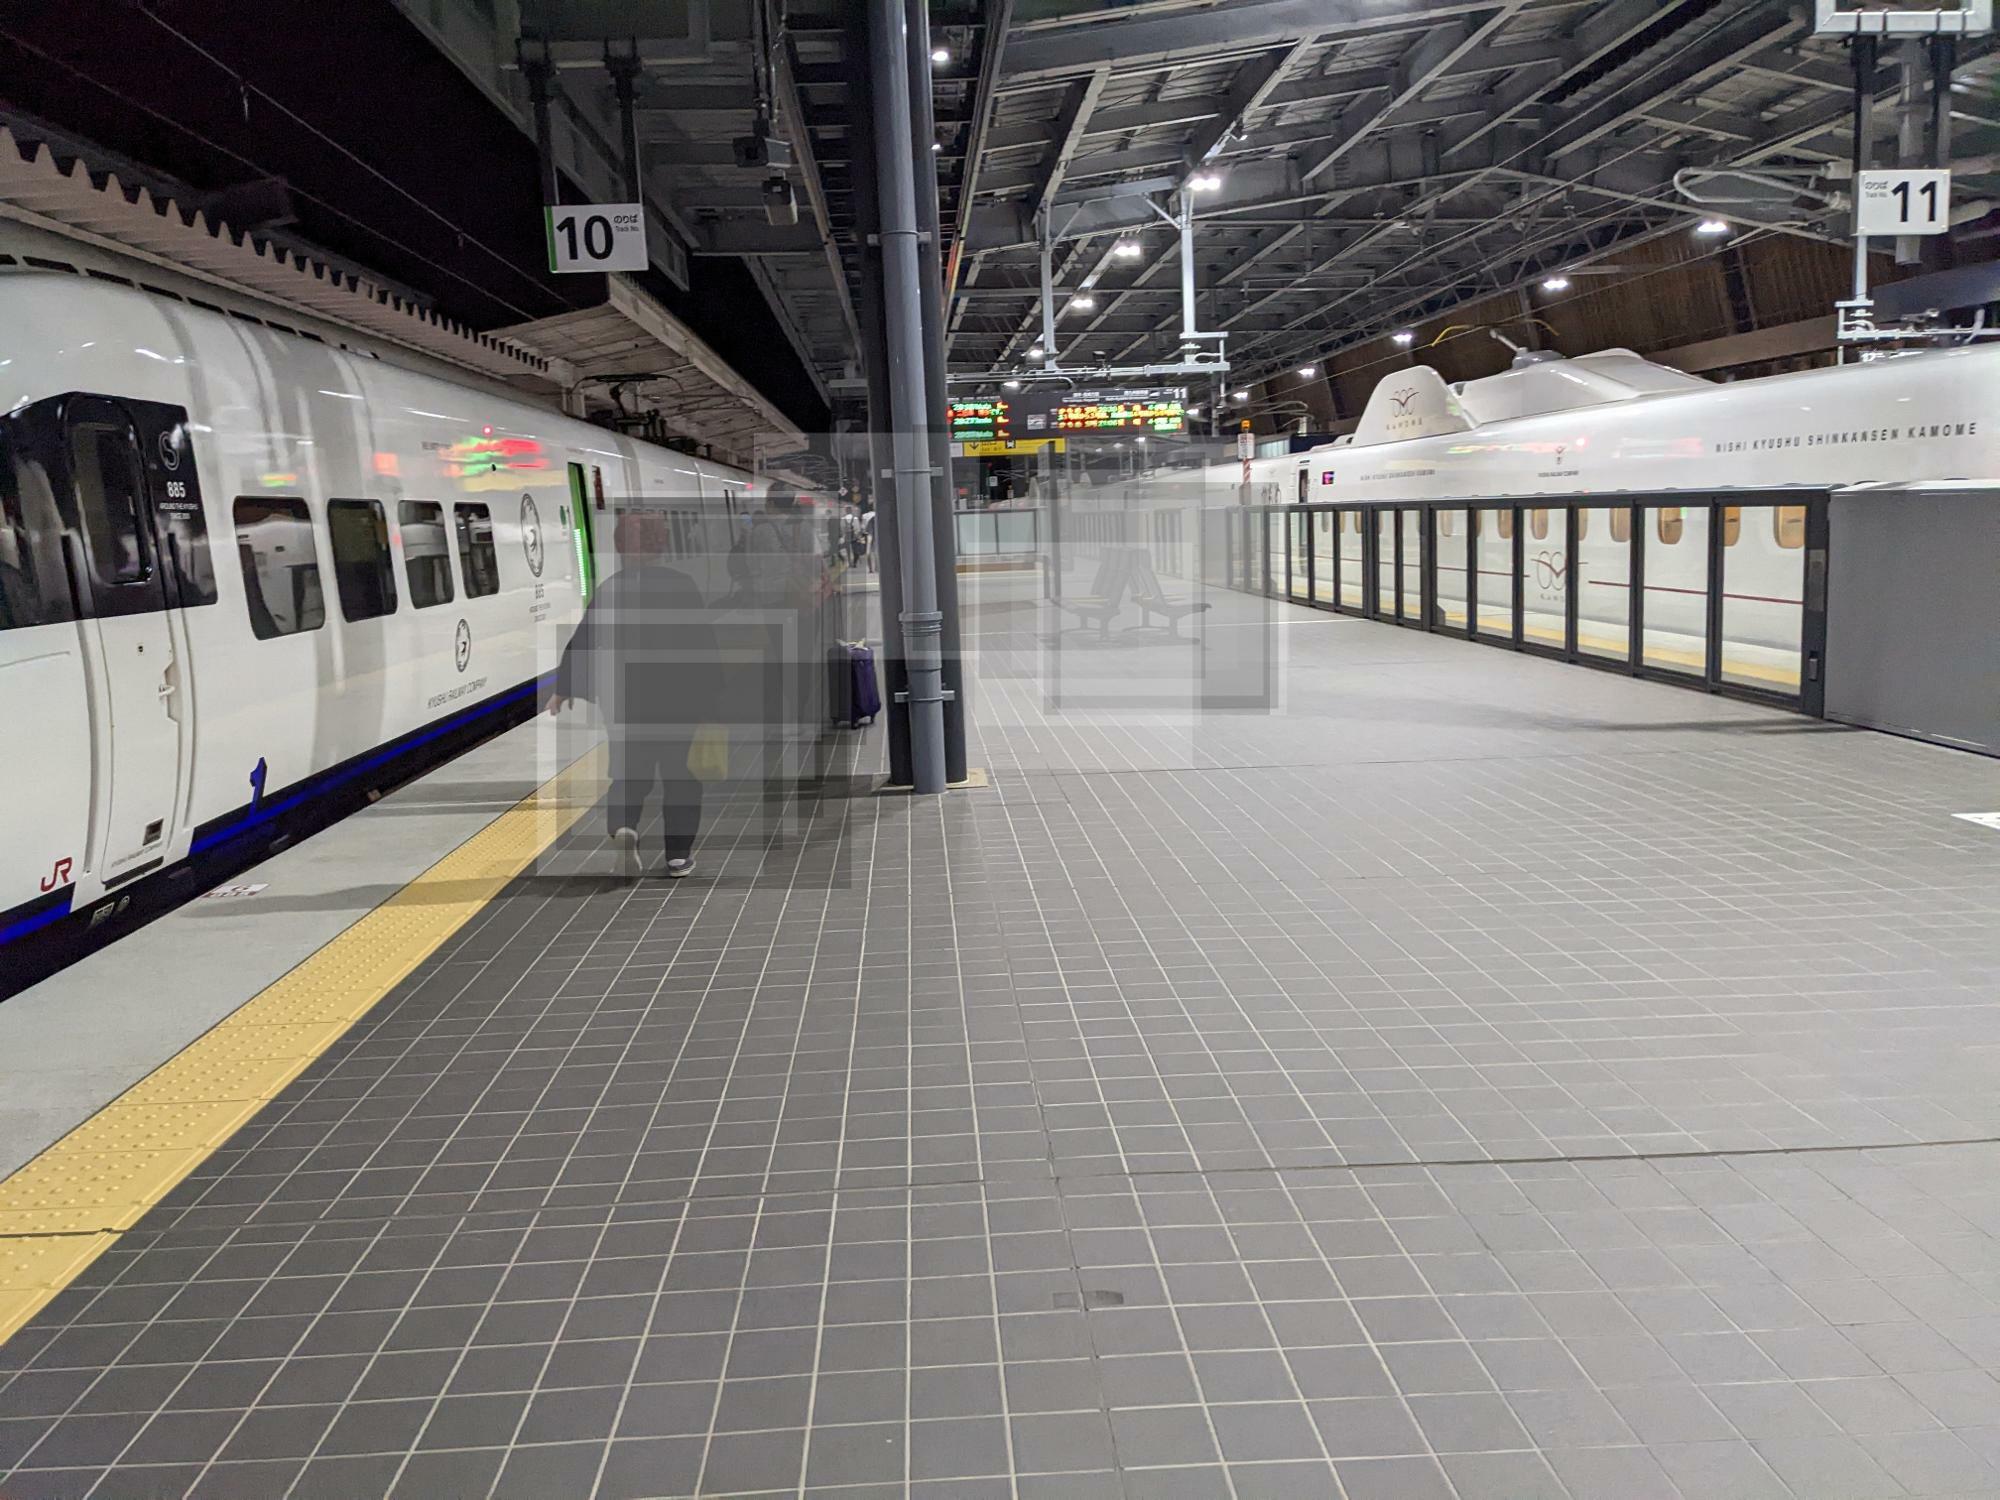 左がリレーかもめ、右が西九州新幹線かもめ。対面乗り換え式になっている。